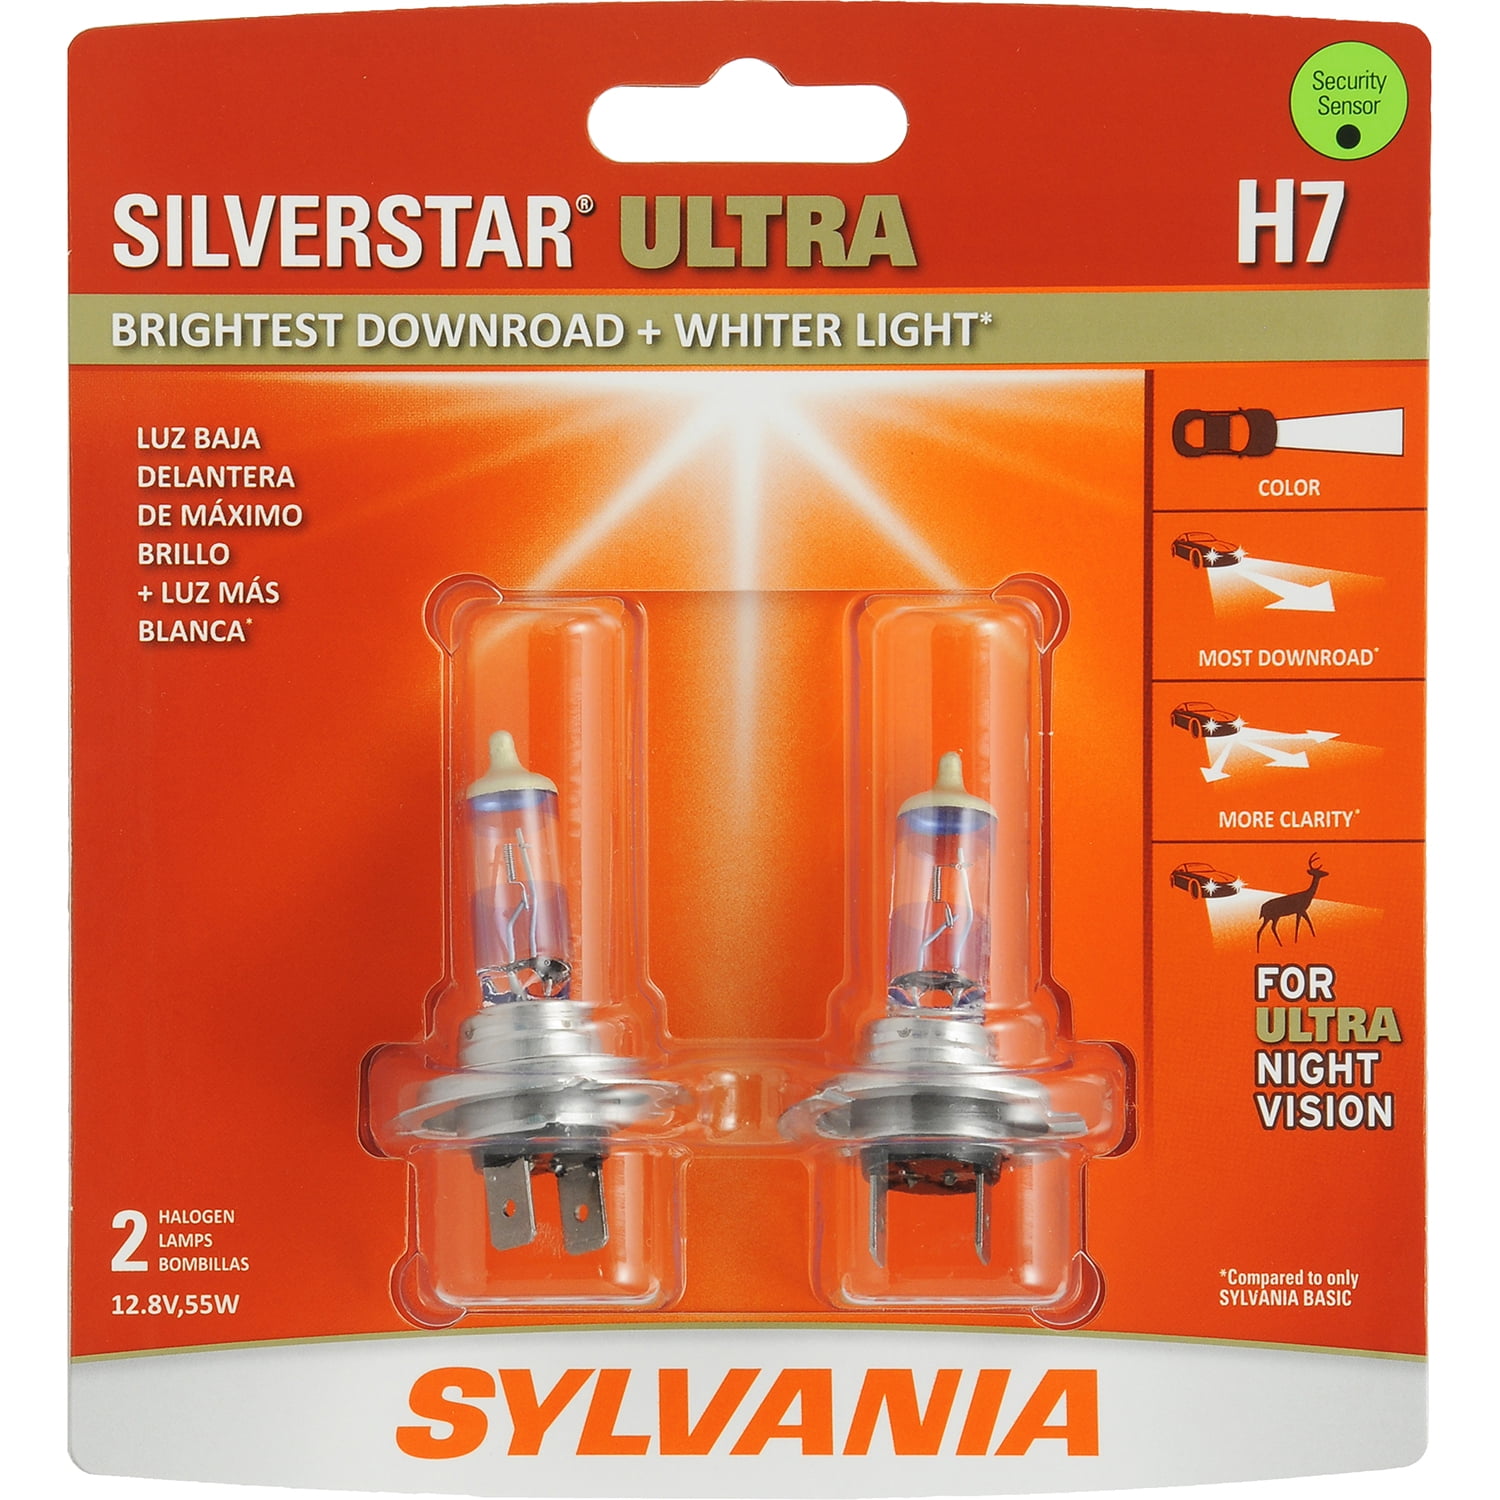 Sylvania H7 SilverStar Ultra Halogen Headlight Bulb, Pack of 2